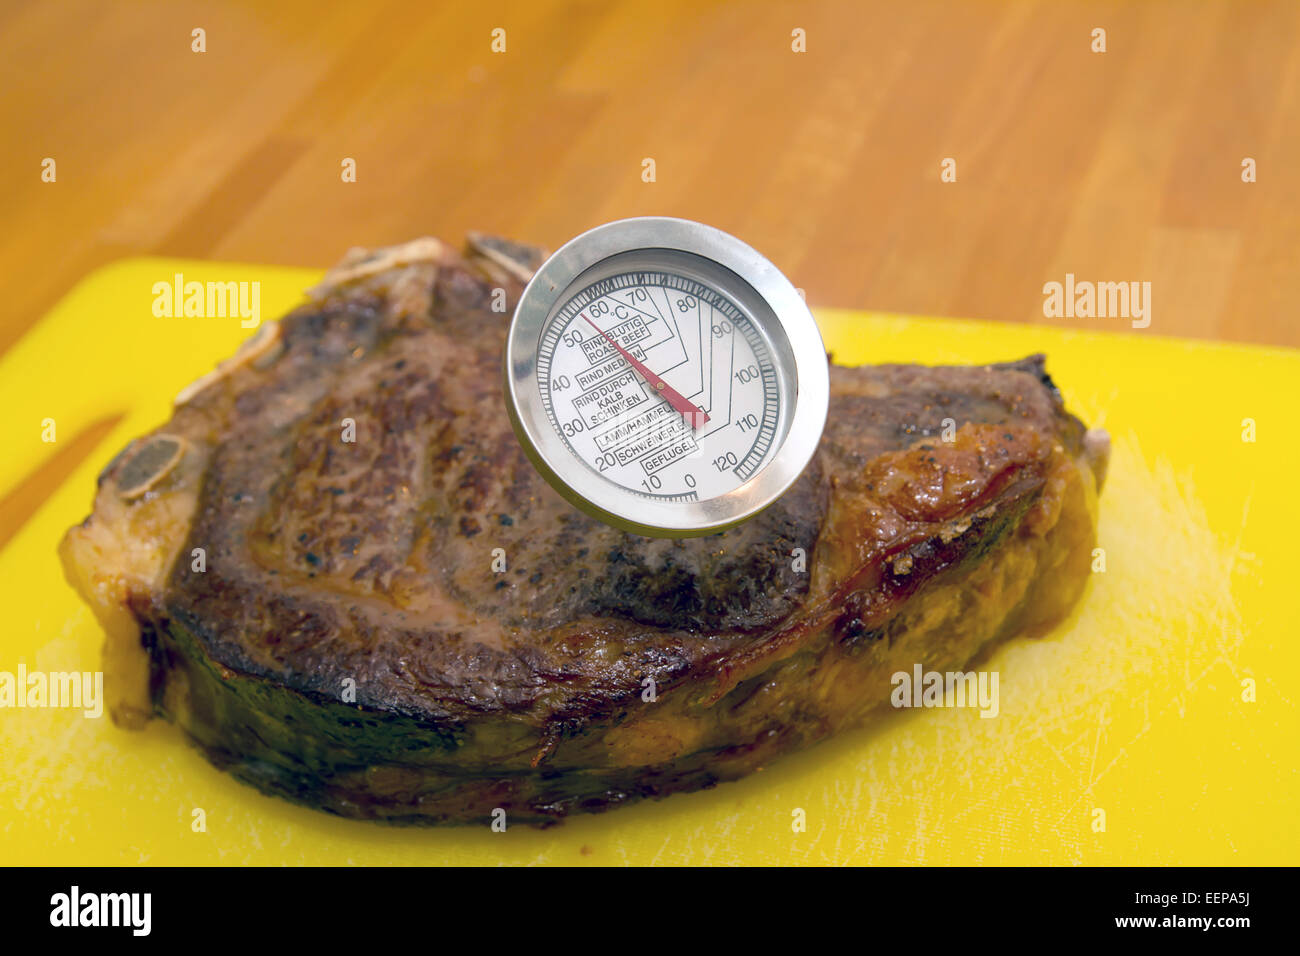 Bistecca con il termometro della carne Foto Stock